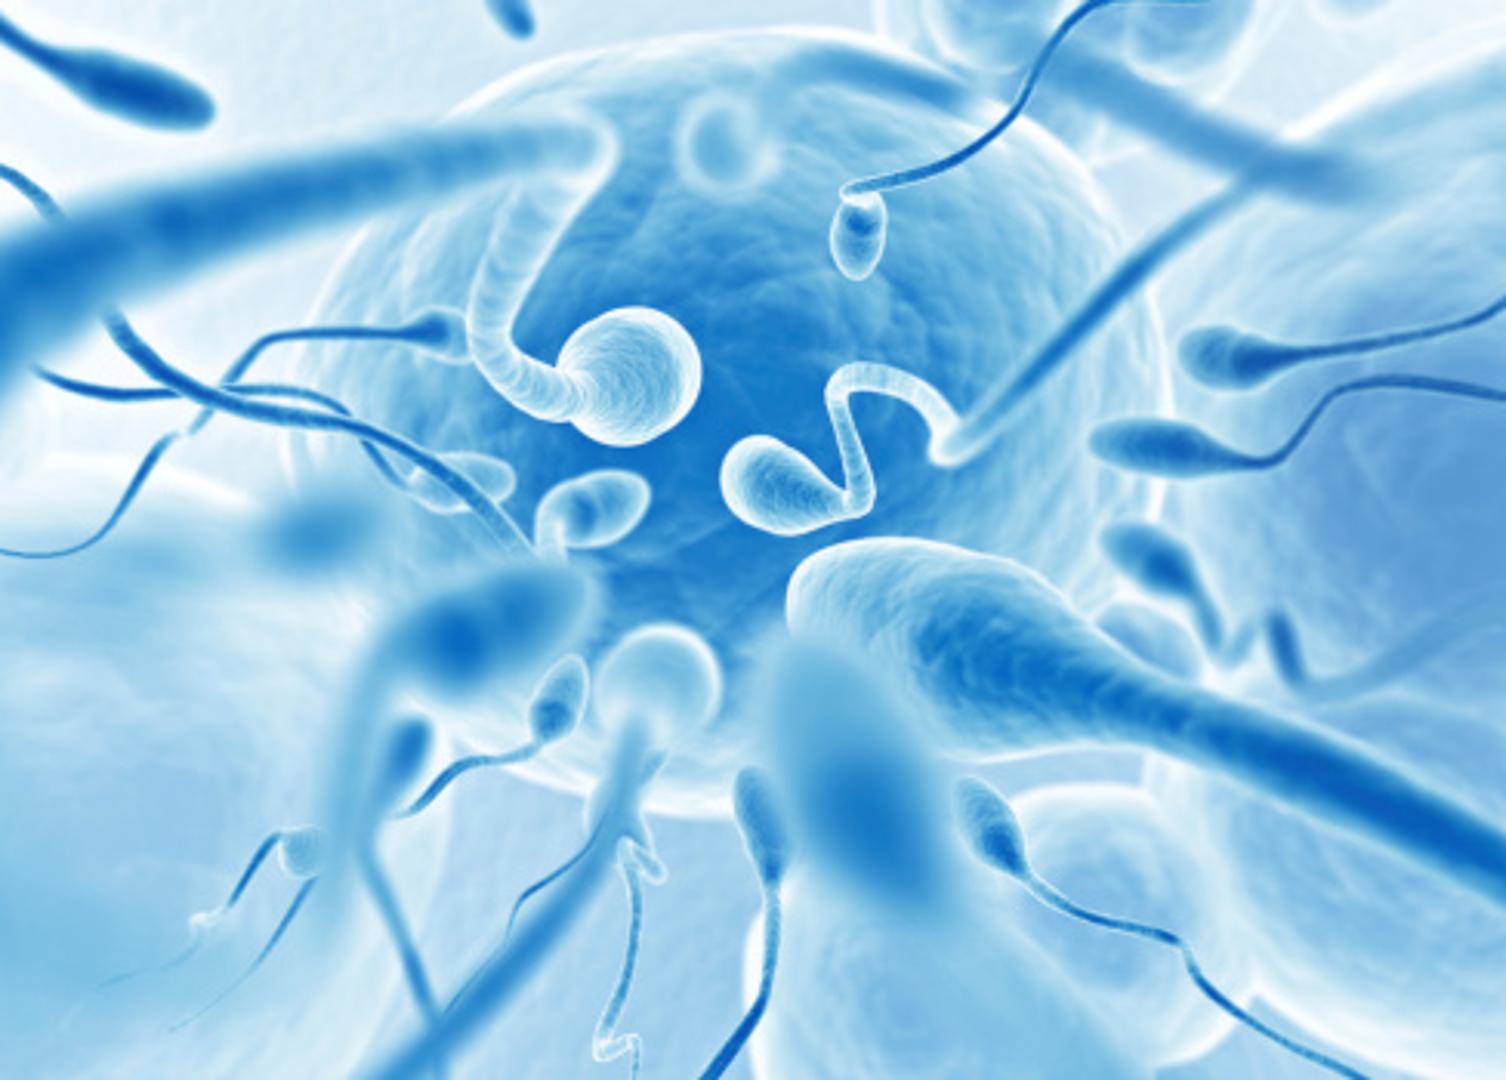 2. Prosječni zdravi muškarac proizvede oko 300 milijuna spermija u samo jednom sjemenu (ejakulatu). Međutim, dovoljan je samo jedan dobar "plivač" da se oplodi žensko jaje.